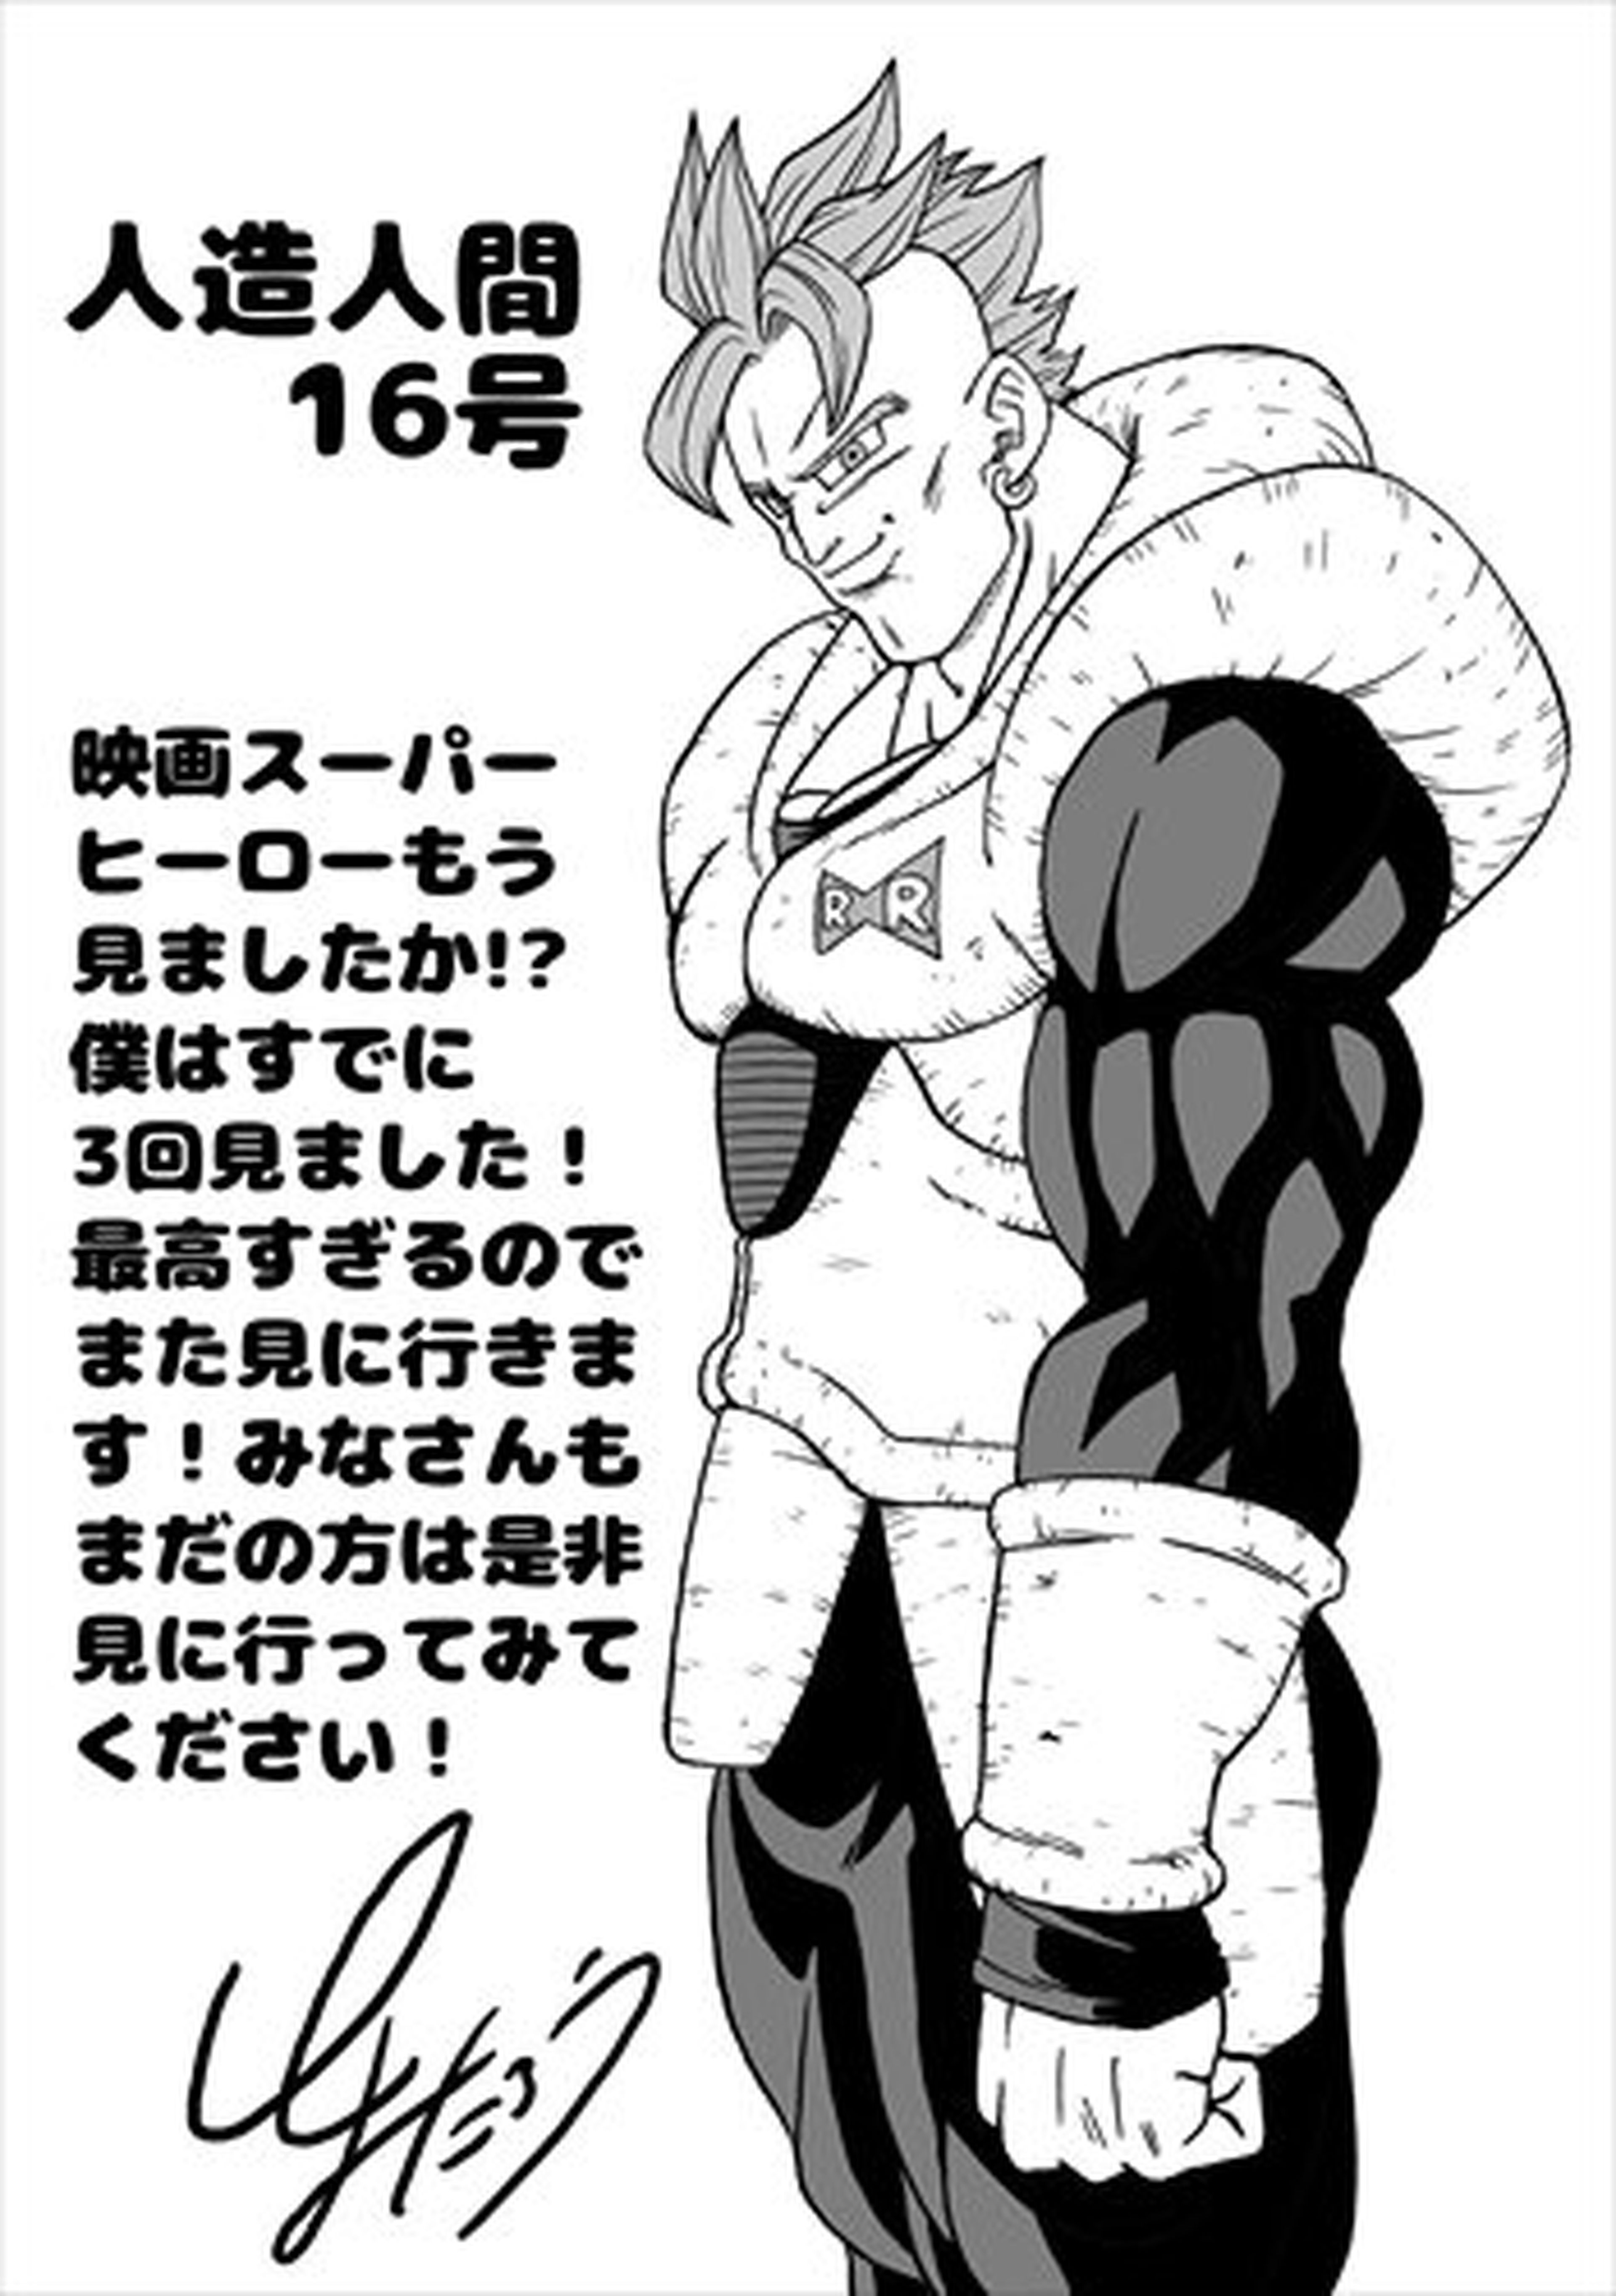 Dragon Ball Super - Toyotaro dibuja por primera vez a Número 16, el querido androide de la Red Ribbon que ha recuperado cierto protagonismo